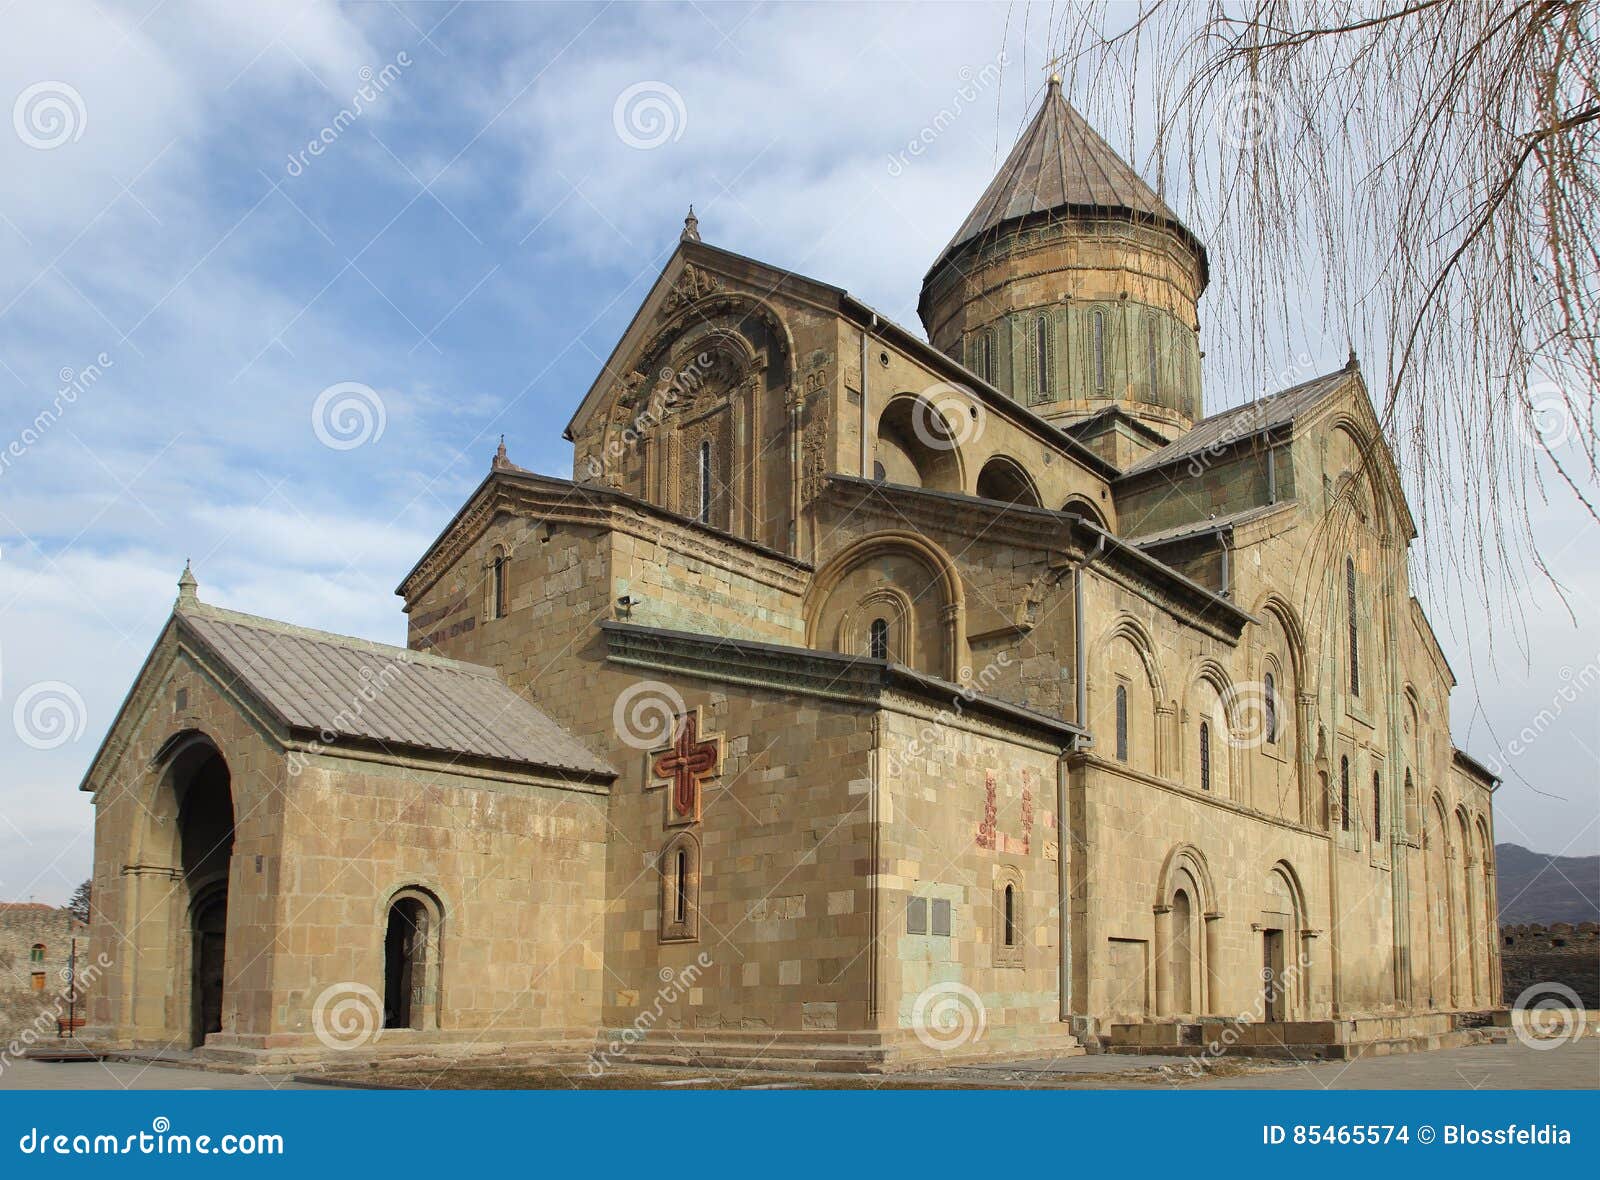 the svetitskhoveli cathedral in mtskheta, georgia